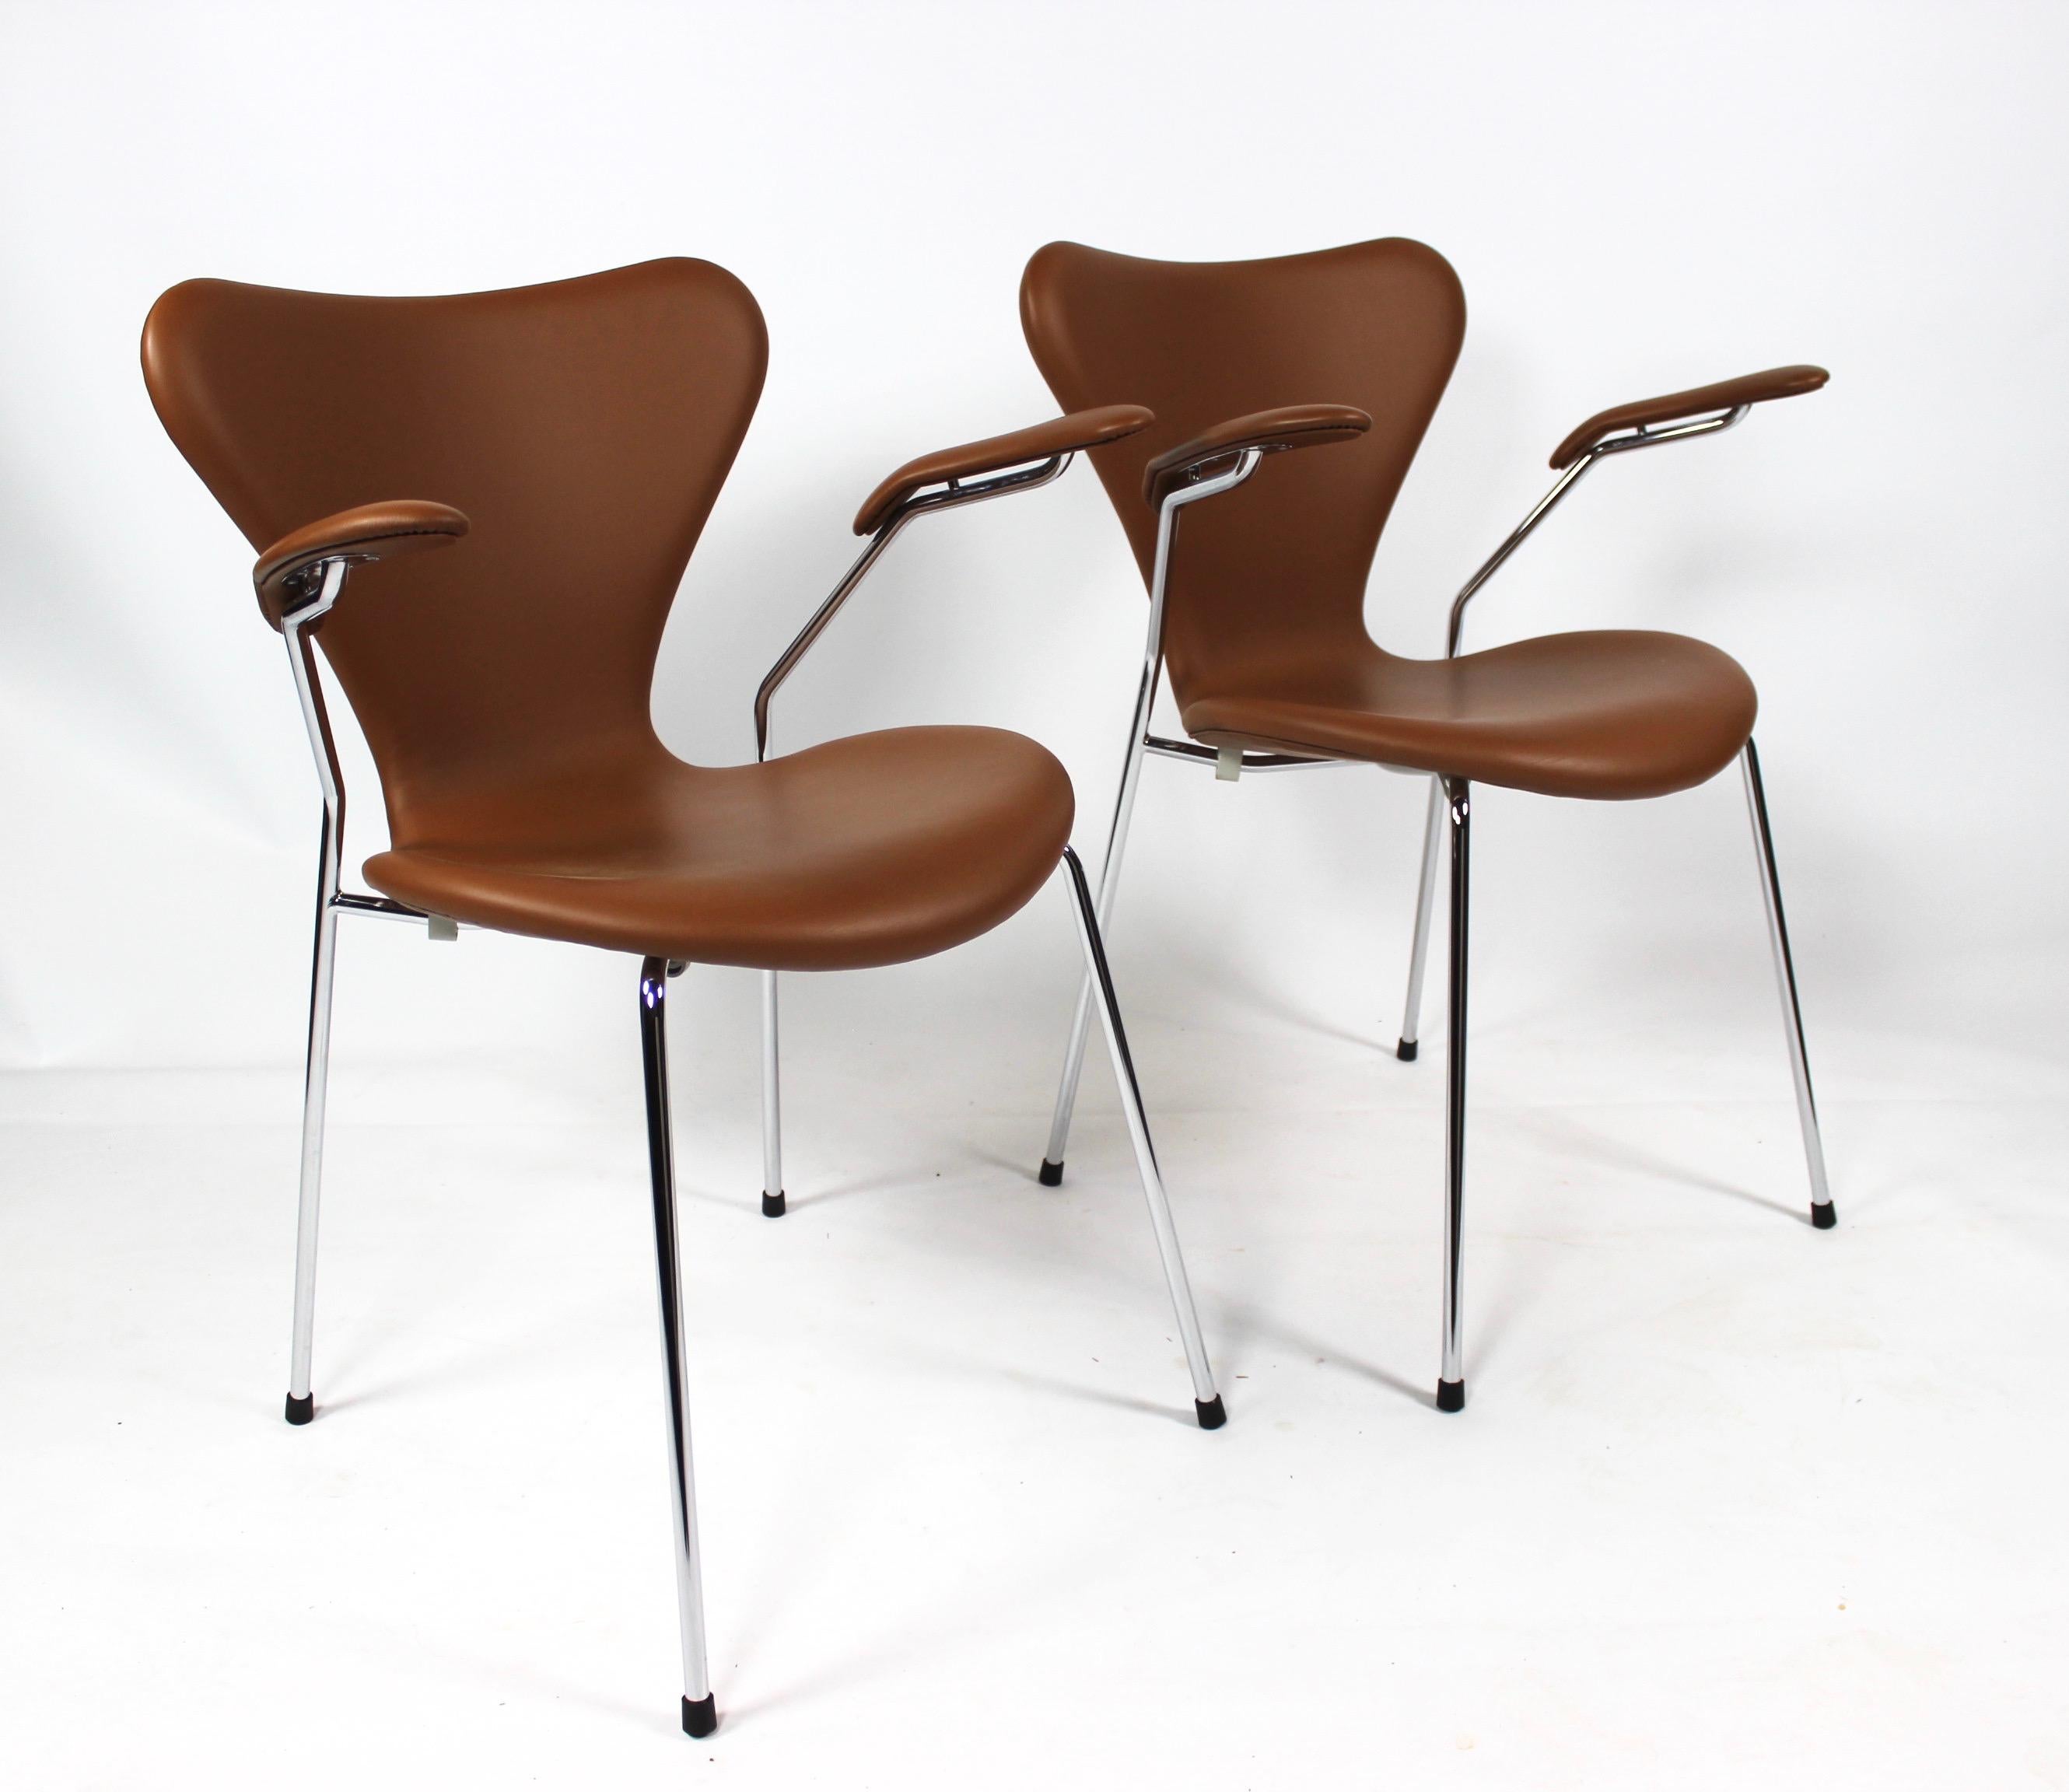 Dette sæt af Syver stole, model 3207, er et tidløst og ikonisk udtryk for dansk design, designet af den legendariske Arne Jacobsen i 1955 og fremstillet af Fritz Hansen i 2019. Stolene er udført i cognacfarvet læder og har elegant armlæn, der